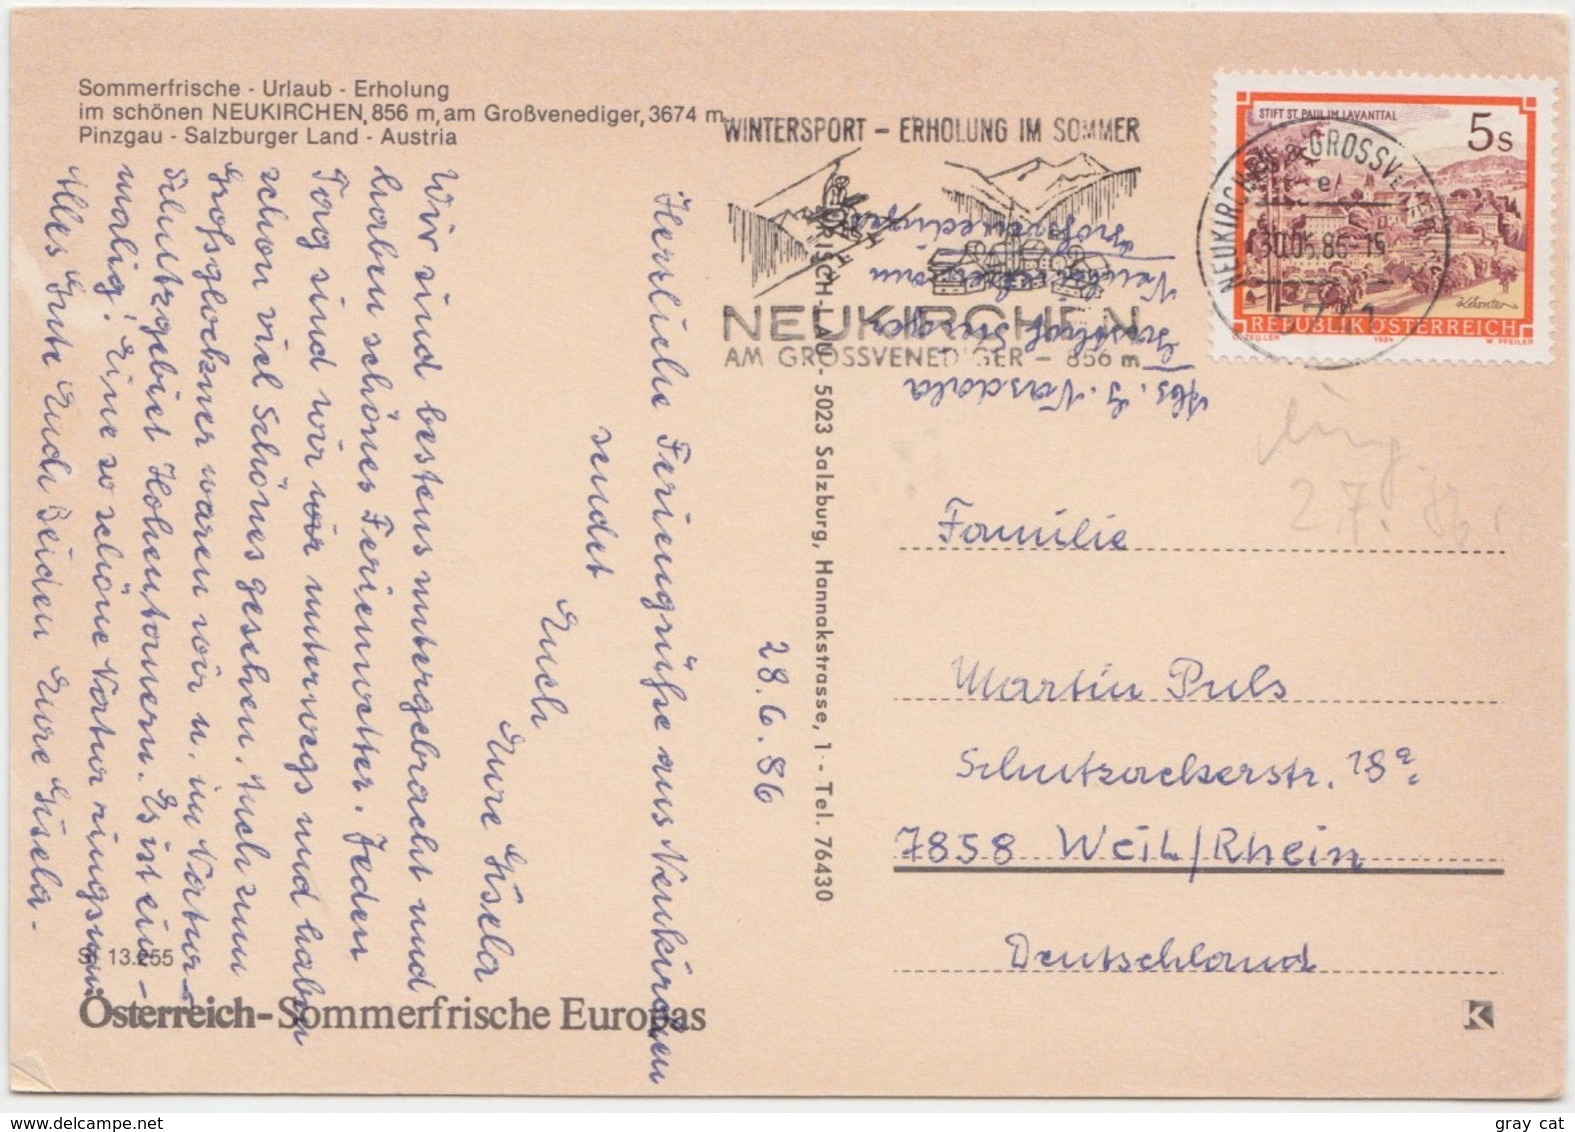 NEUKIRCHEN, Am Grossvenediger, Austria, 1986 Used Postcard [21776] - Neukirchen Am Grossvenediger